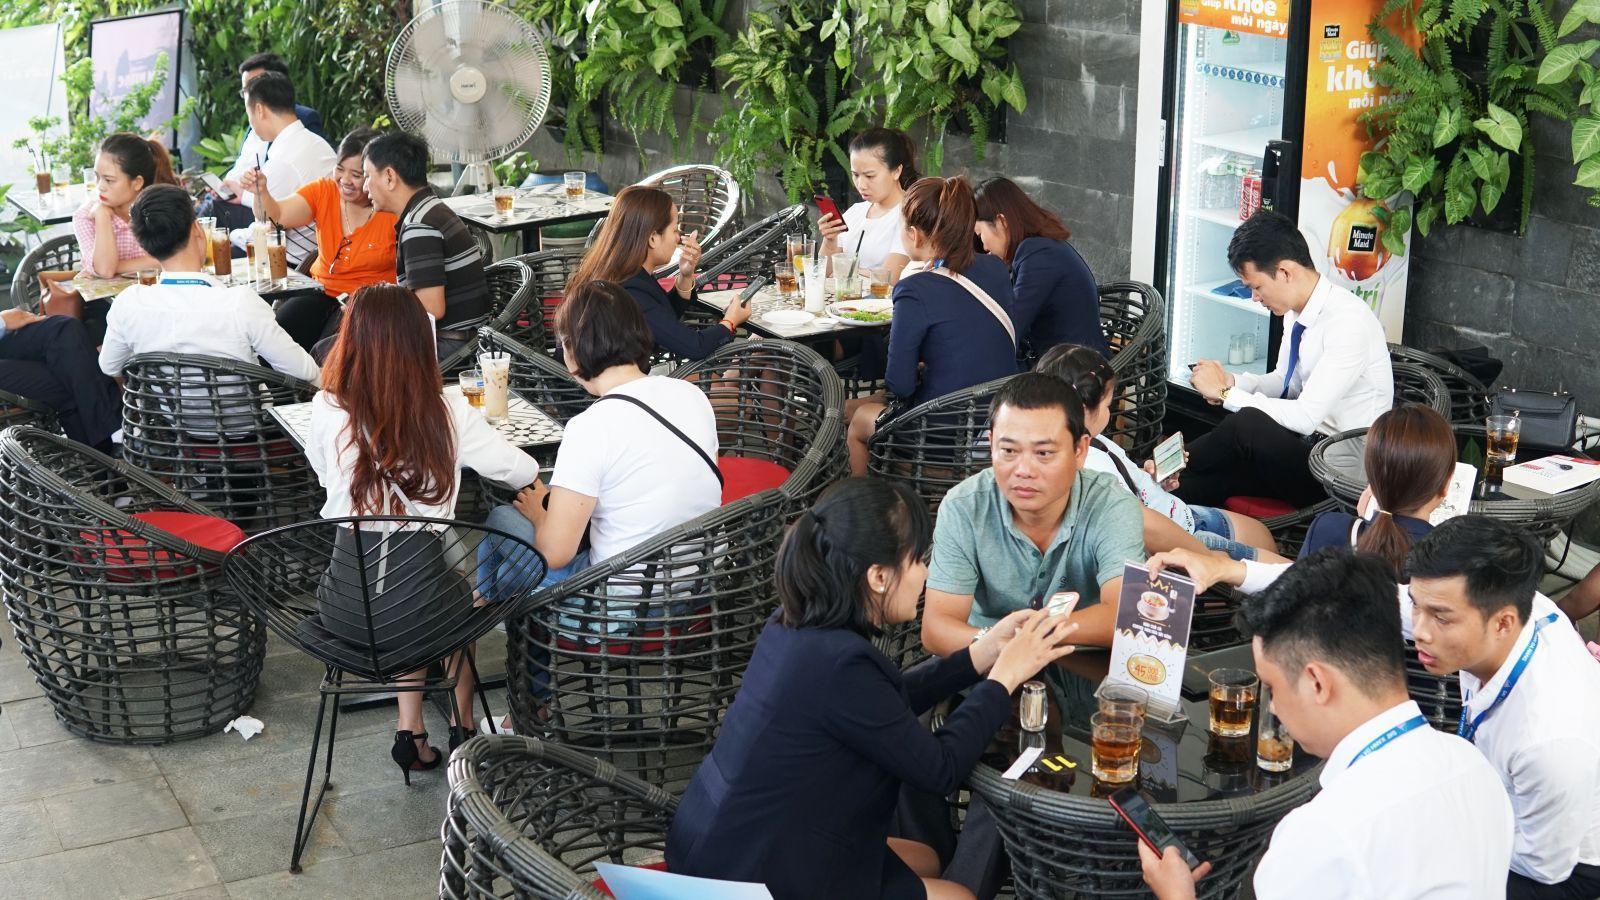 SỨC HÚT THỊ TRƯỜNG ẤN TƯỢNG TẠI SỰ KIỆN CAFE BẤT ĐỘNG SẢN “ĐIỂM HẸN ĐẦU TƯ – KẾT NỐI THỊNH VƯỢNG” - Viet Nam Smart City